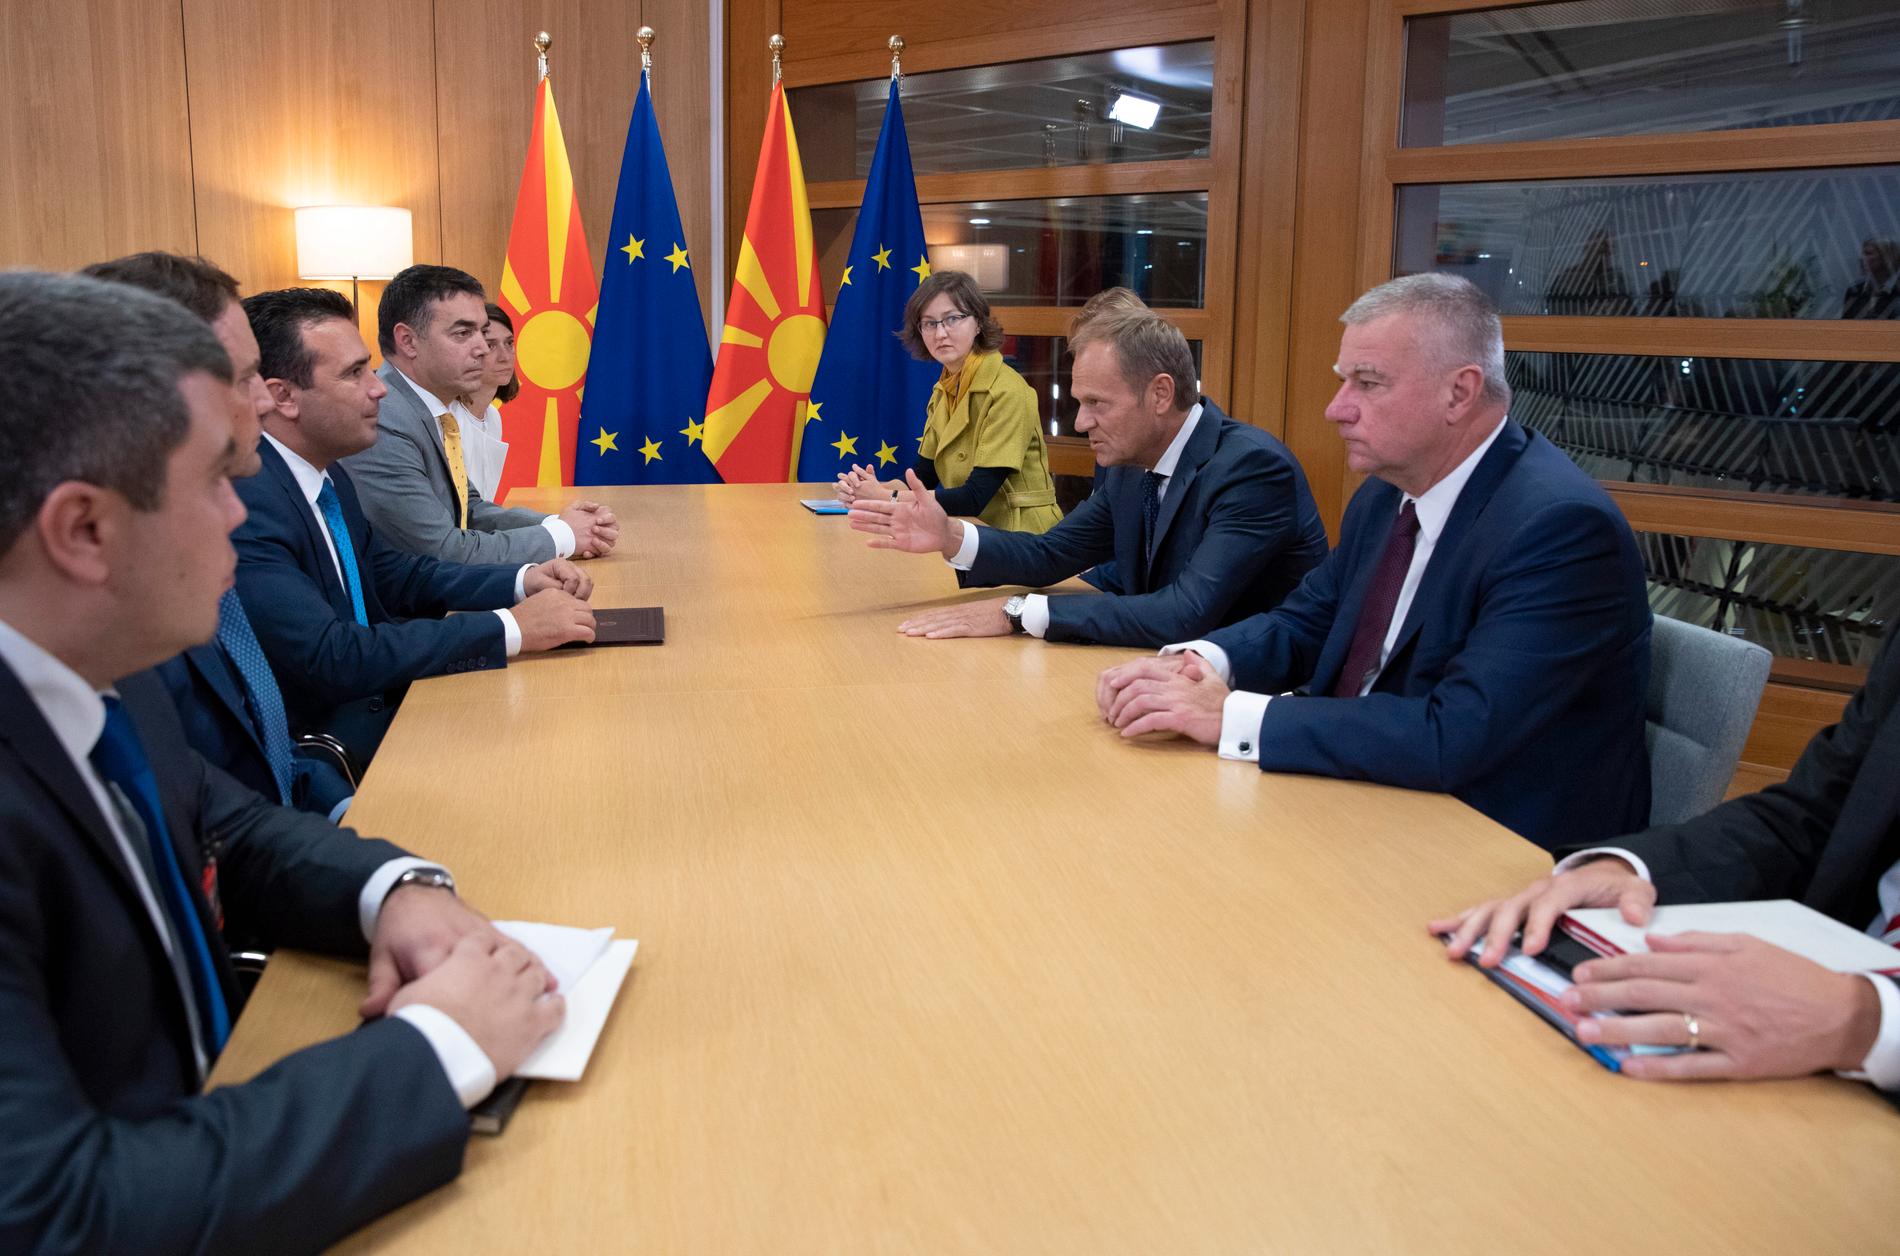 EU:s permanente rådsordförande Donald Tusk, på högersidan, talar vid ett möte med bland andra Makedoniens premiärminister Zoran Zaev. Mötet ägde rum häromdagen, inför det nu pågående toppmötet.